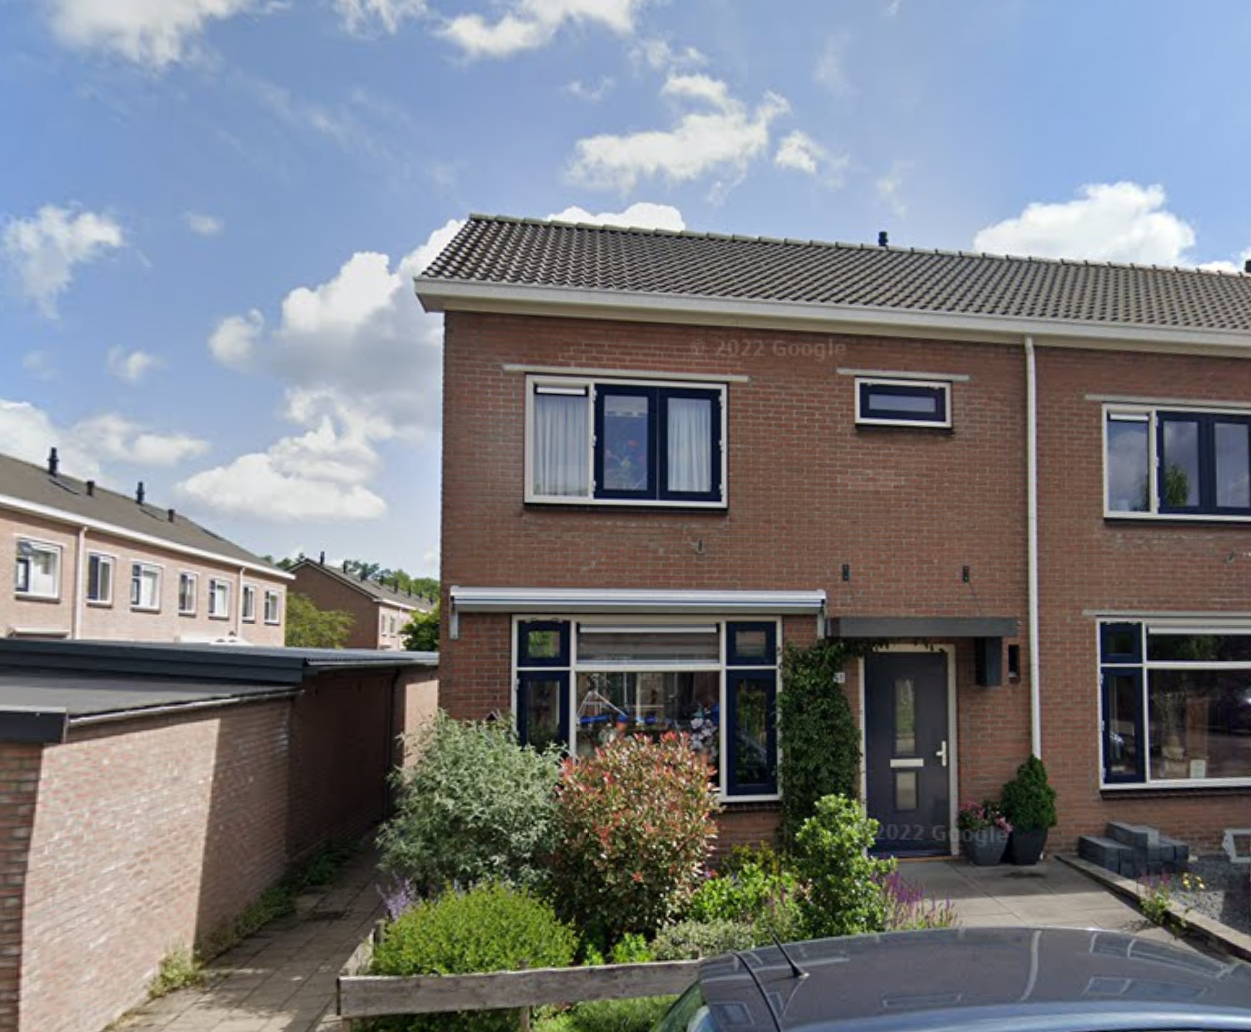 Tufsteenstraat 48, 8084 XV 't Harde, Nederland